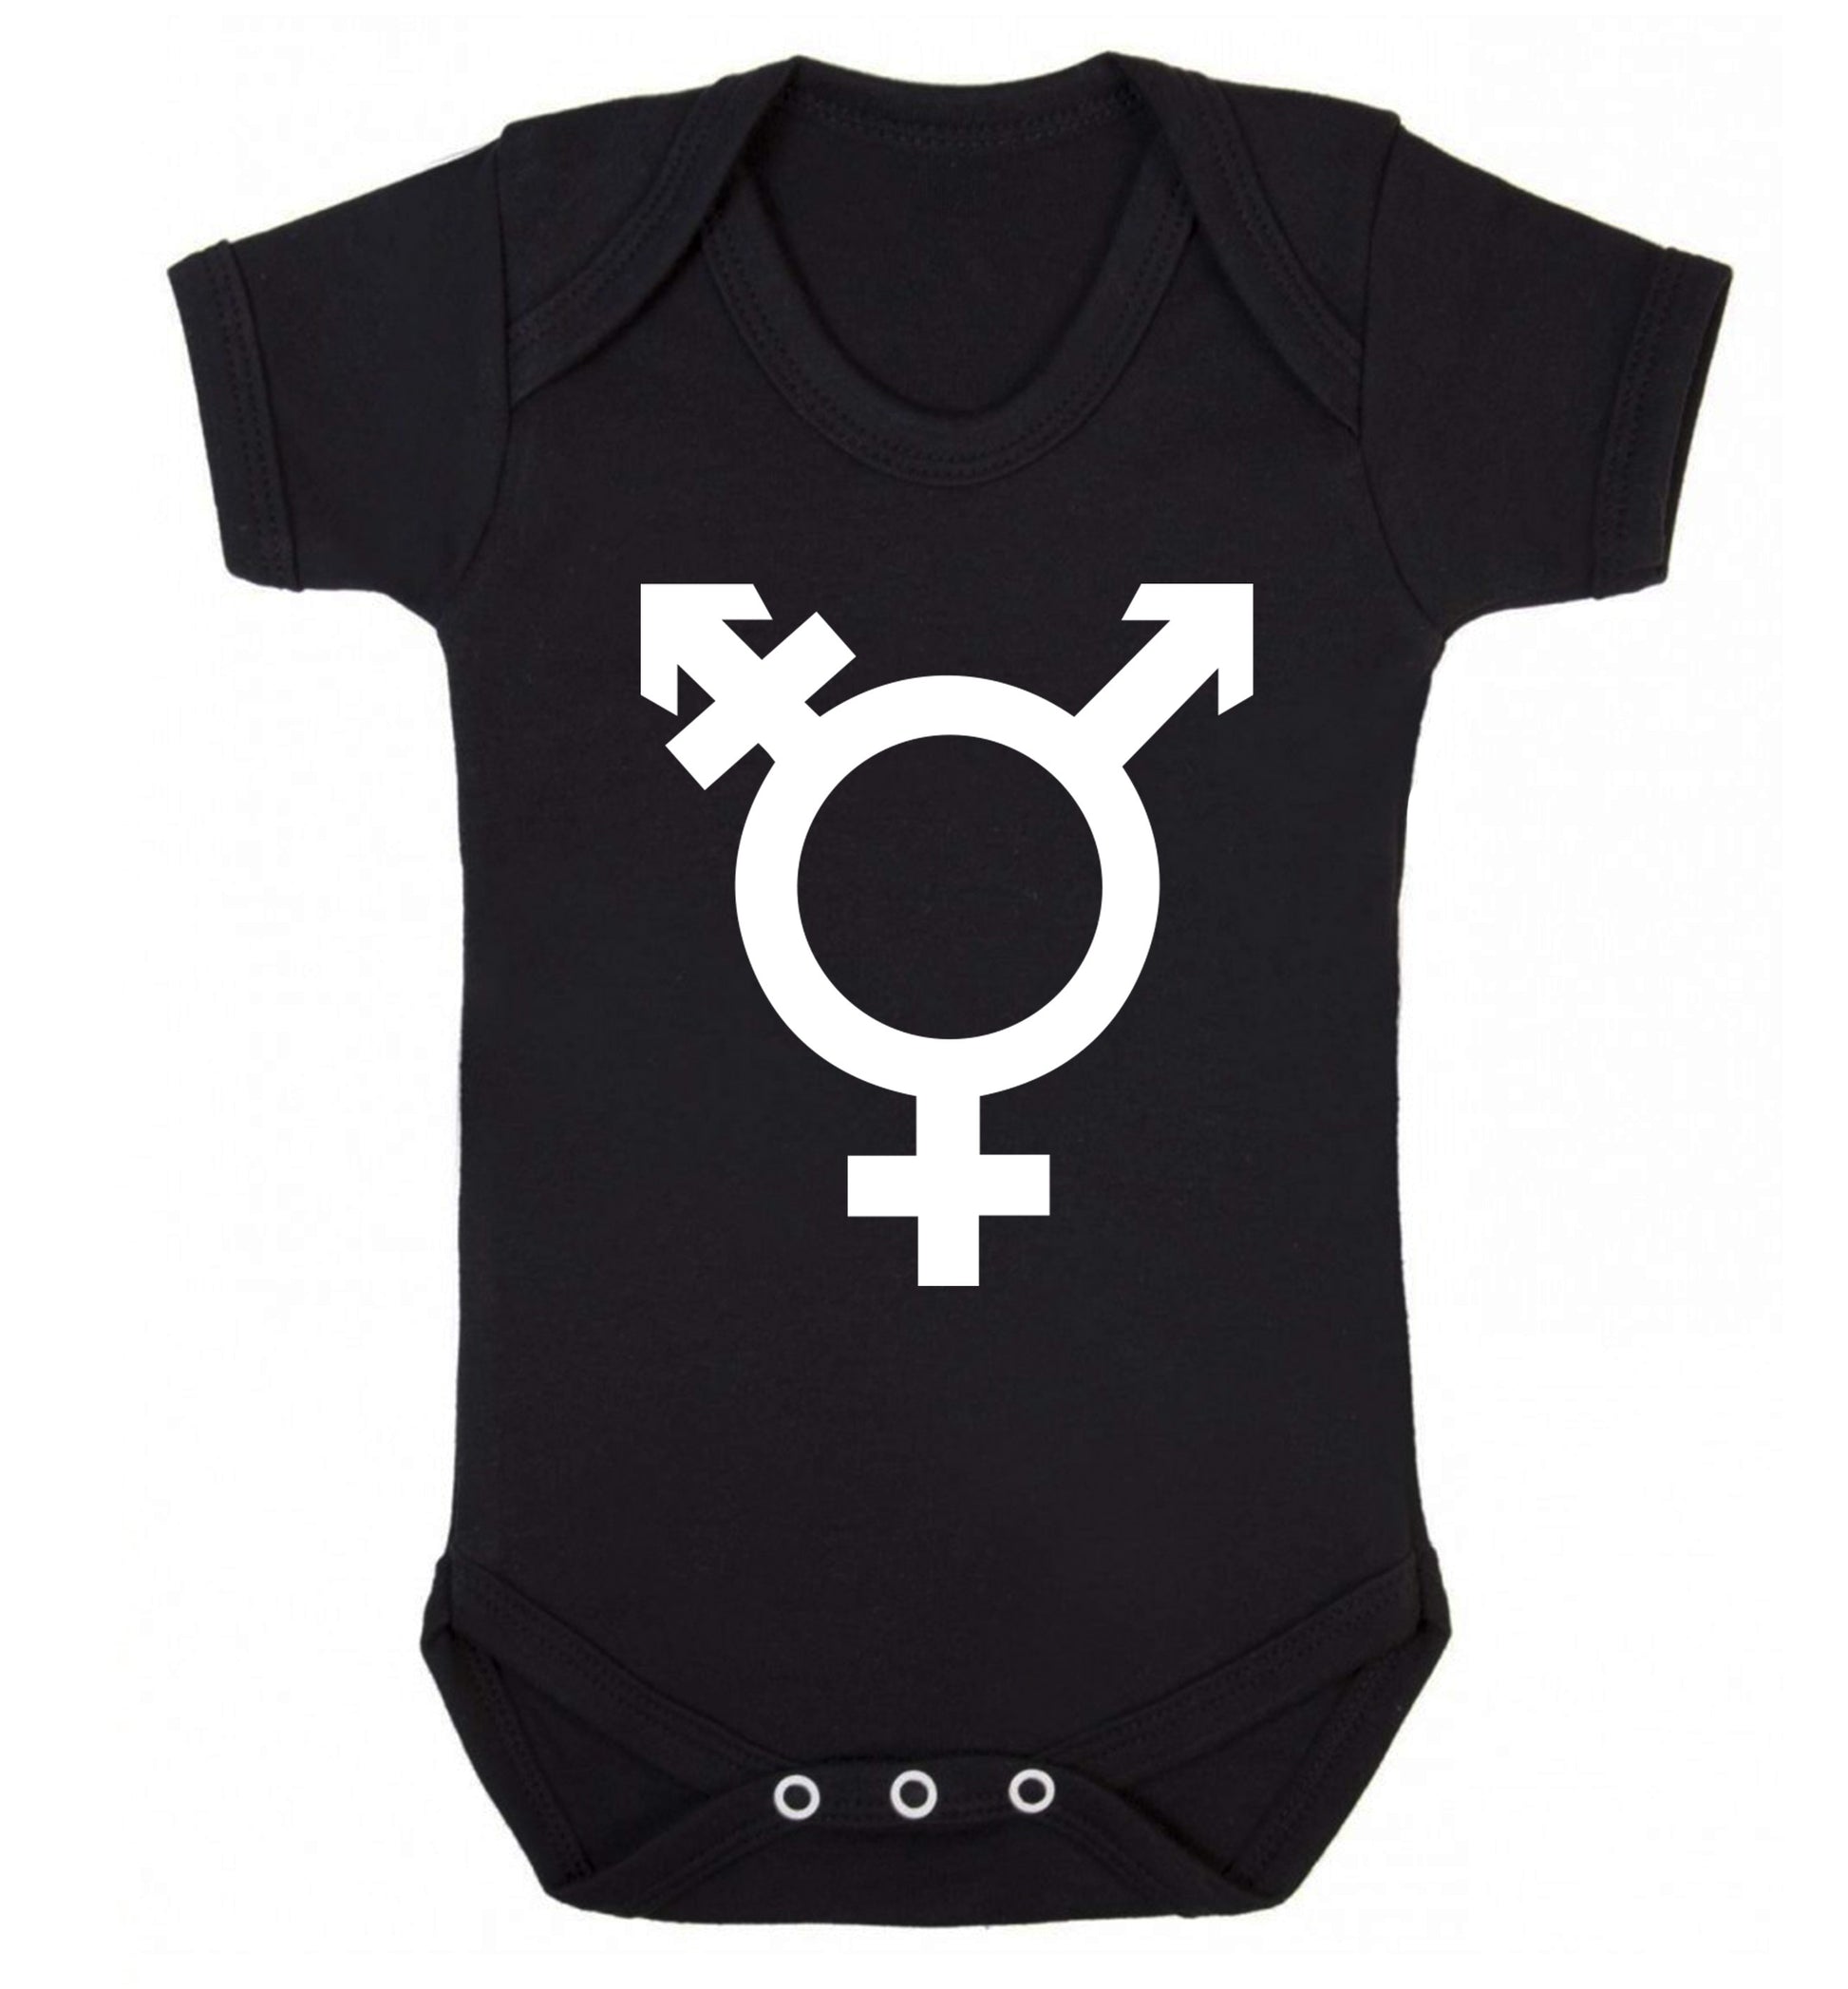 Gender neutral symbol large Baby Vest black 18-24 months